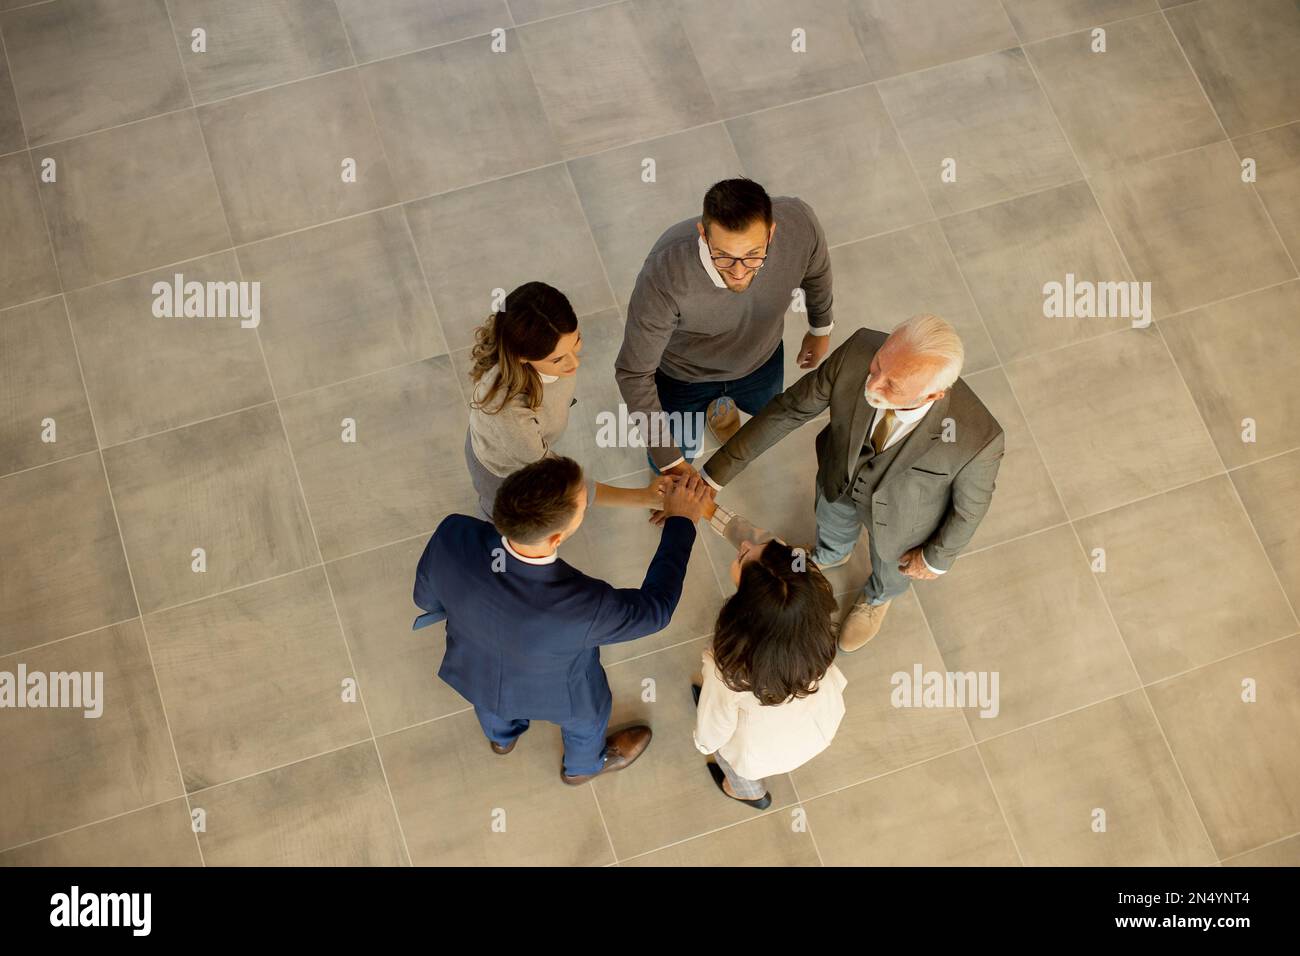 Un groupe de jeunes gens d'affaires et de personnes âgées se réunissent dans un couloir de bureau, debout dans un cercle avec leurs mains jointes. Ils sont habillés de professiono Banque D'Images